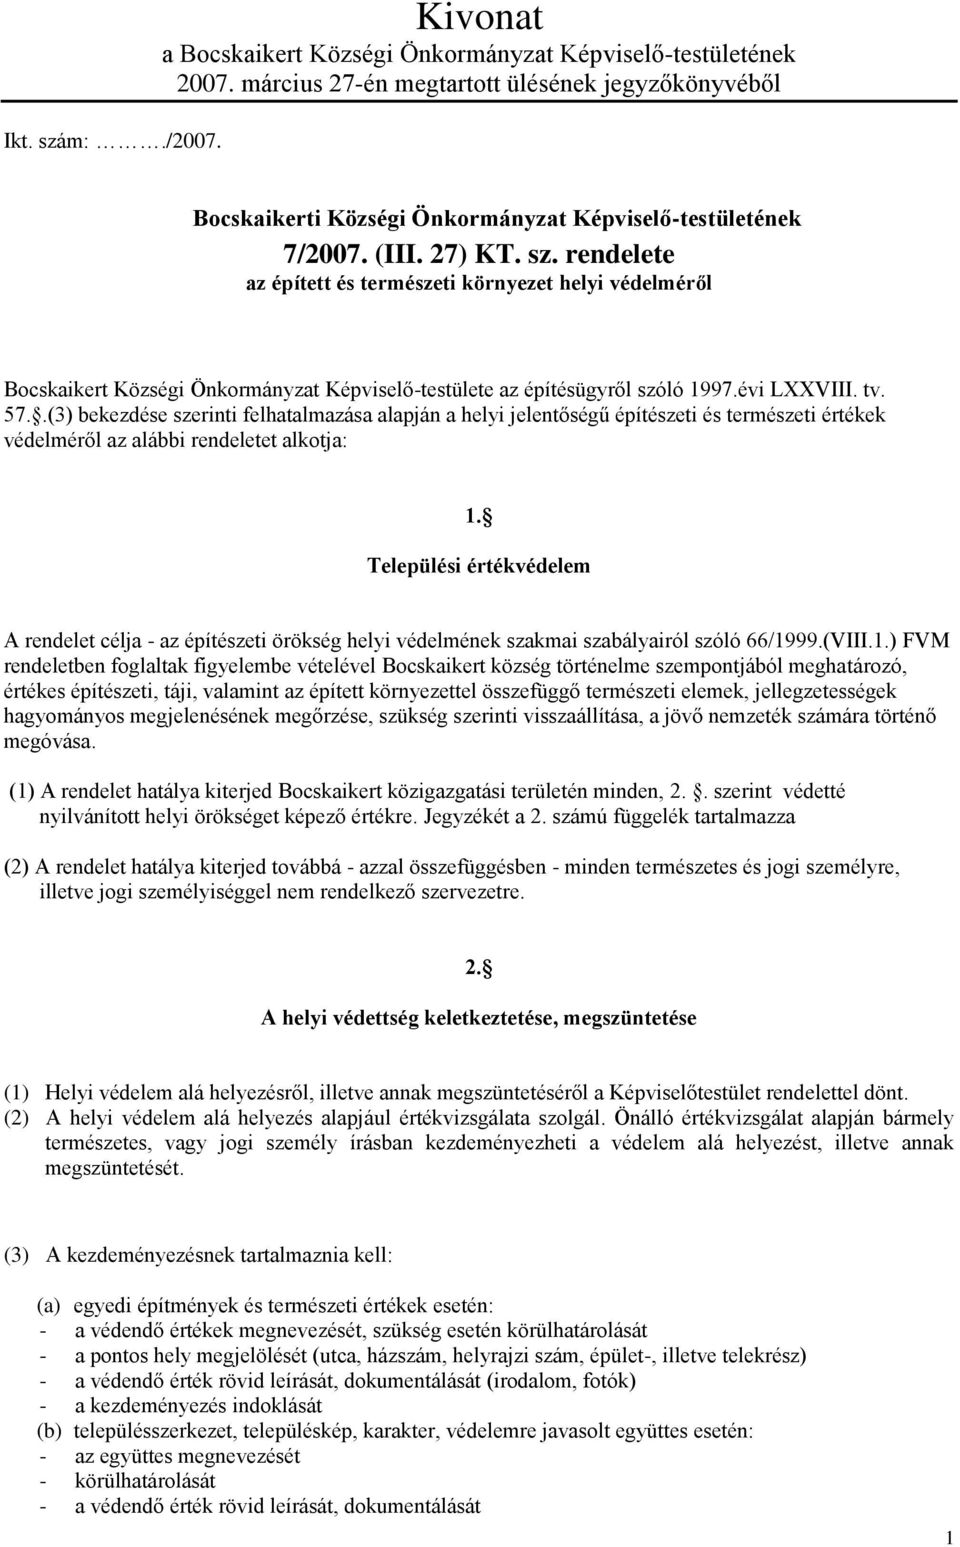 rendelete az épített és természeti környezet helyi védelméről Bocskaikert Községi Önkormányzat Képviselő-testülete az építésügyről szóló 1997.évi LXXVIII. tv. 57.